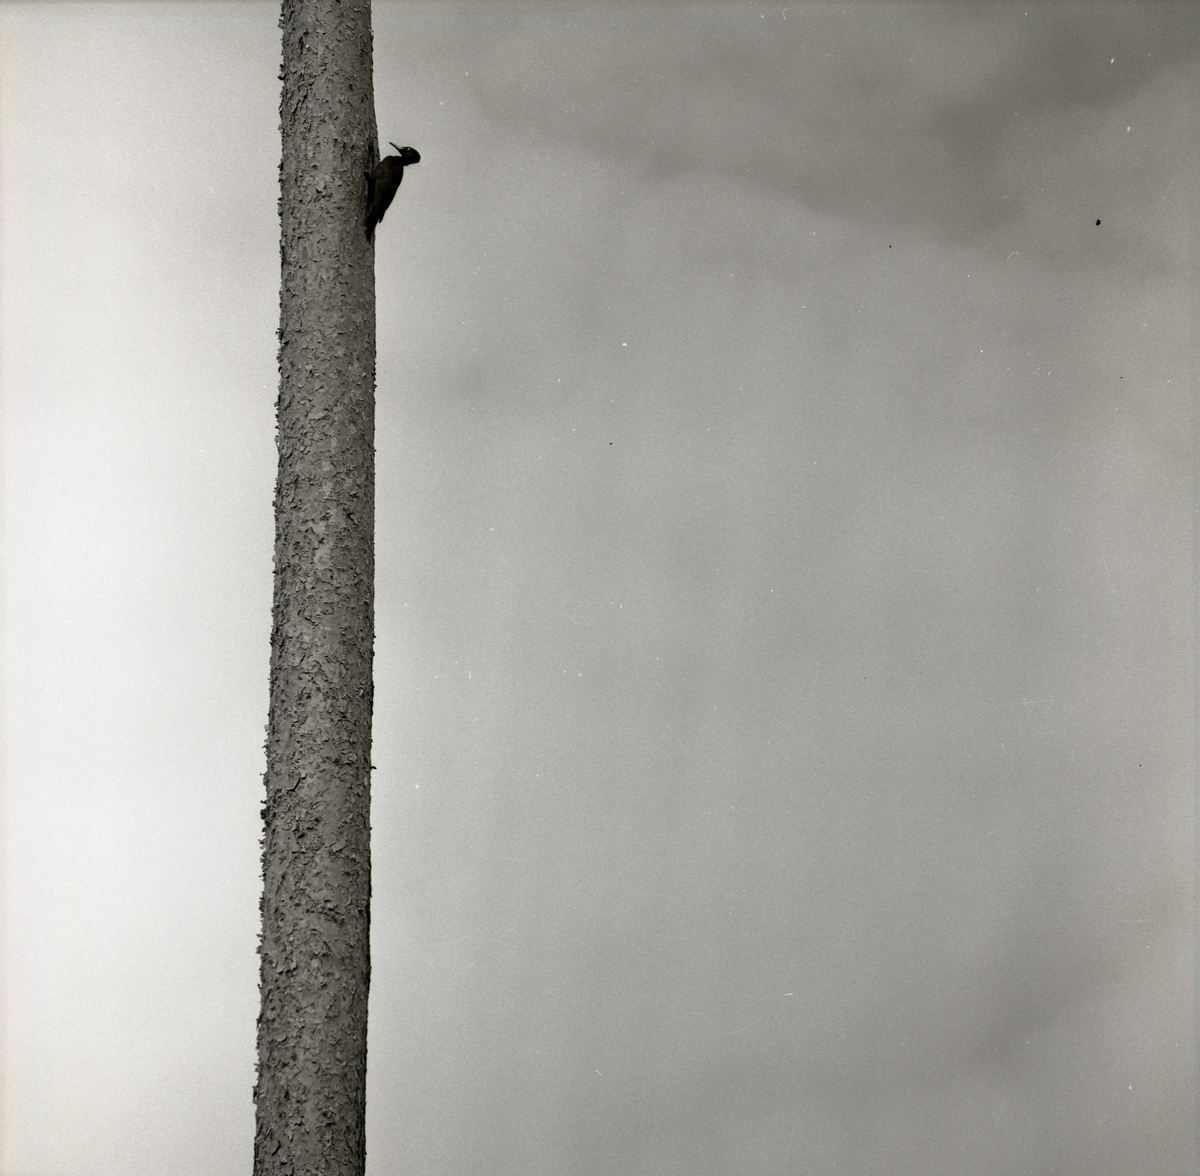 En spillkråkeunge sitter på en tall våren 1961.